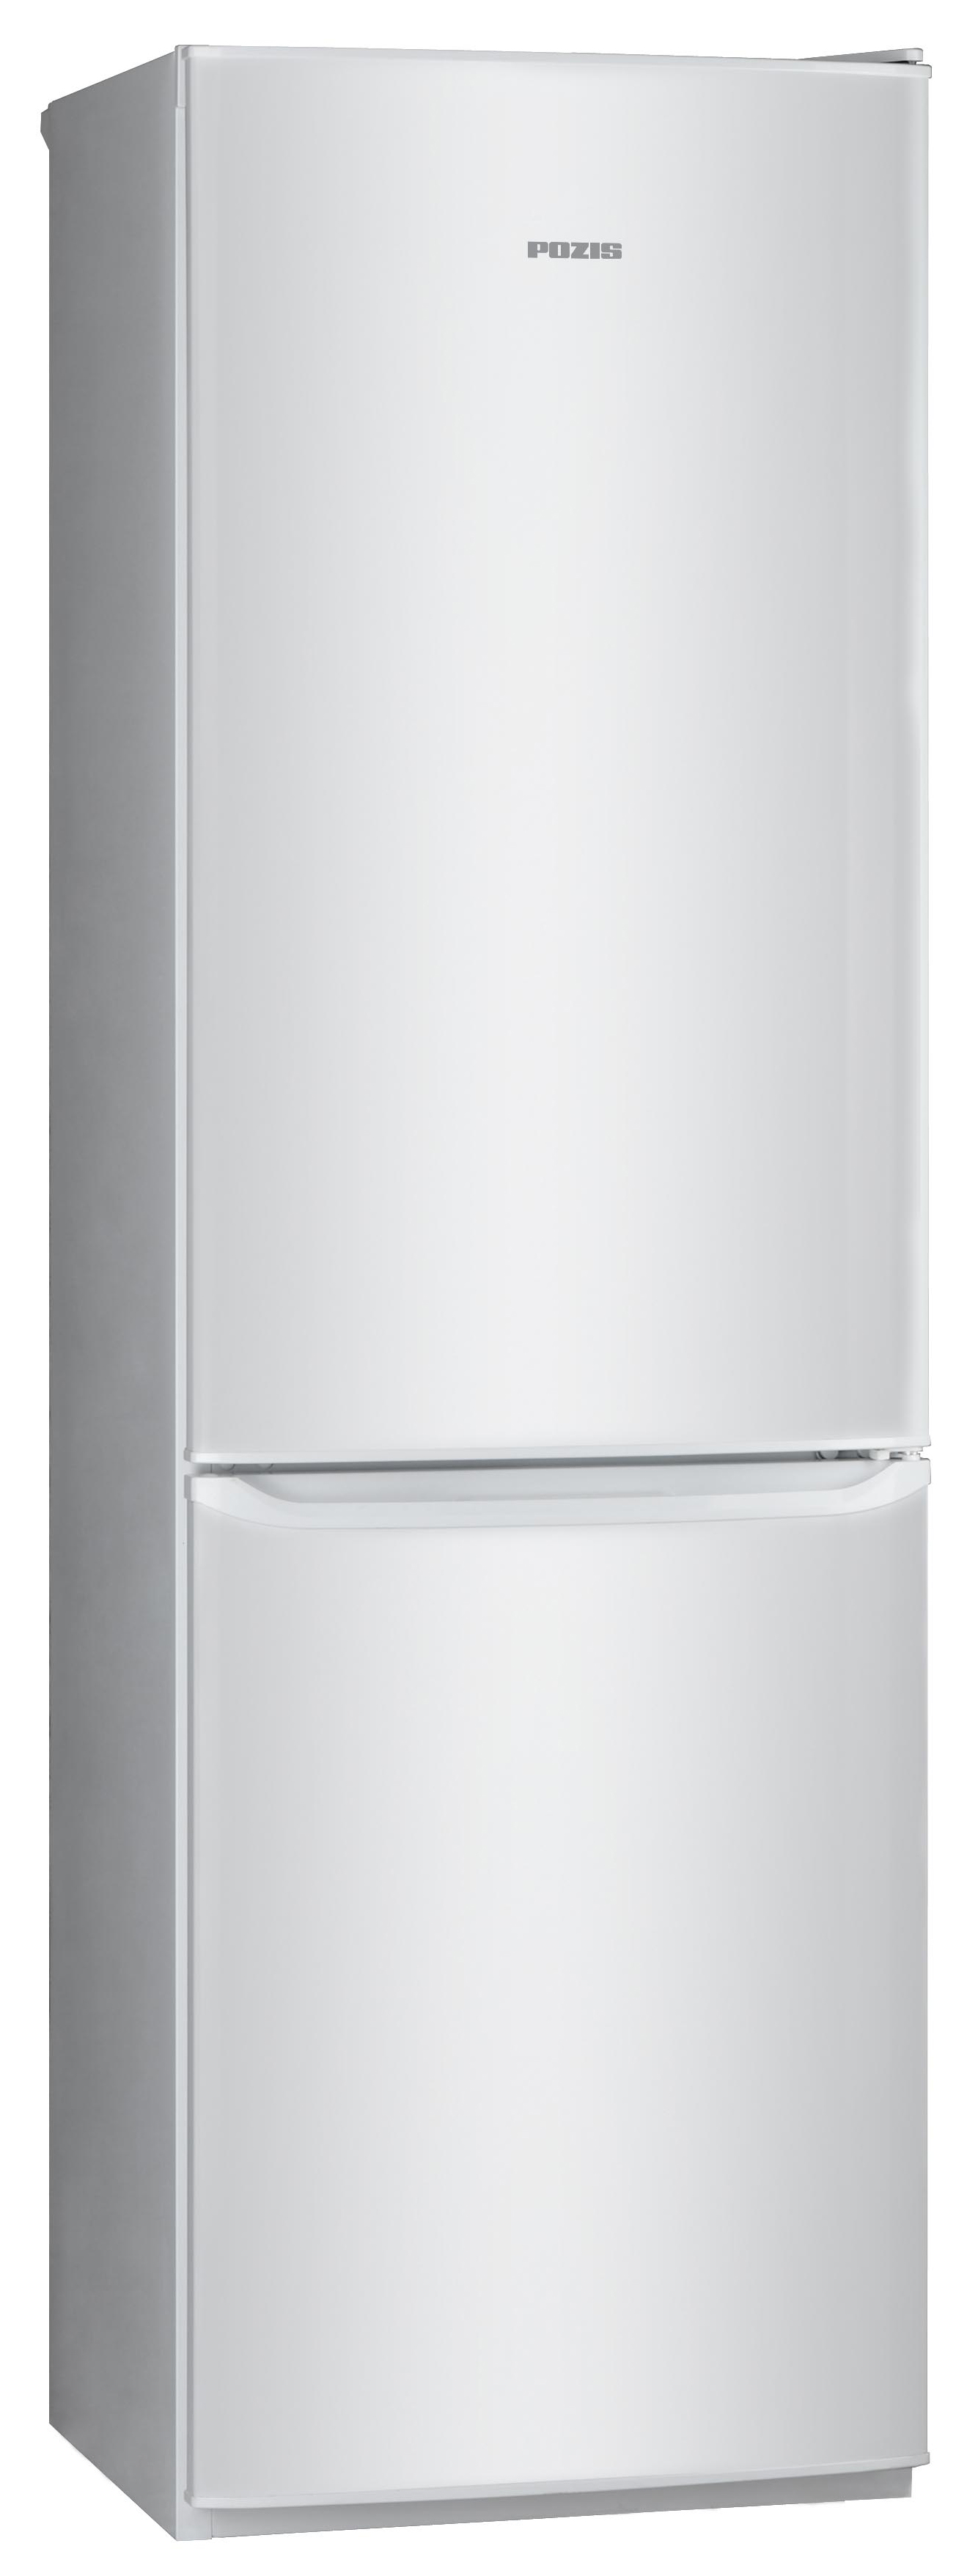 Холодильник POZIS RD-149 серебристый холодильник pozis rk 149 рубиновый